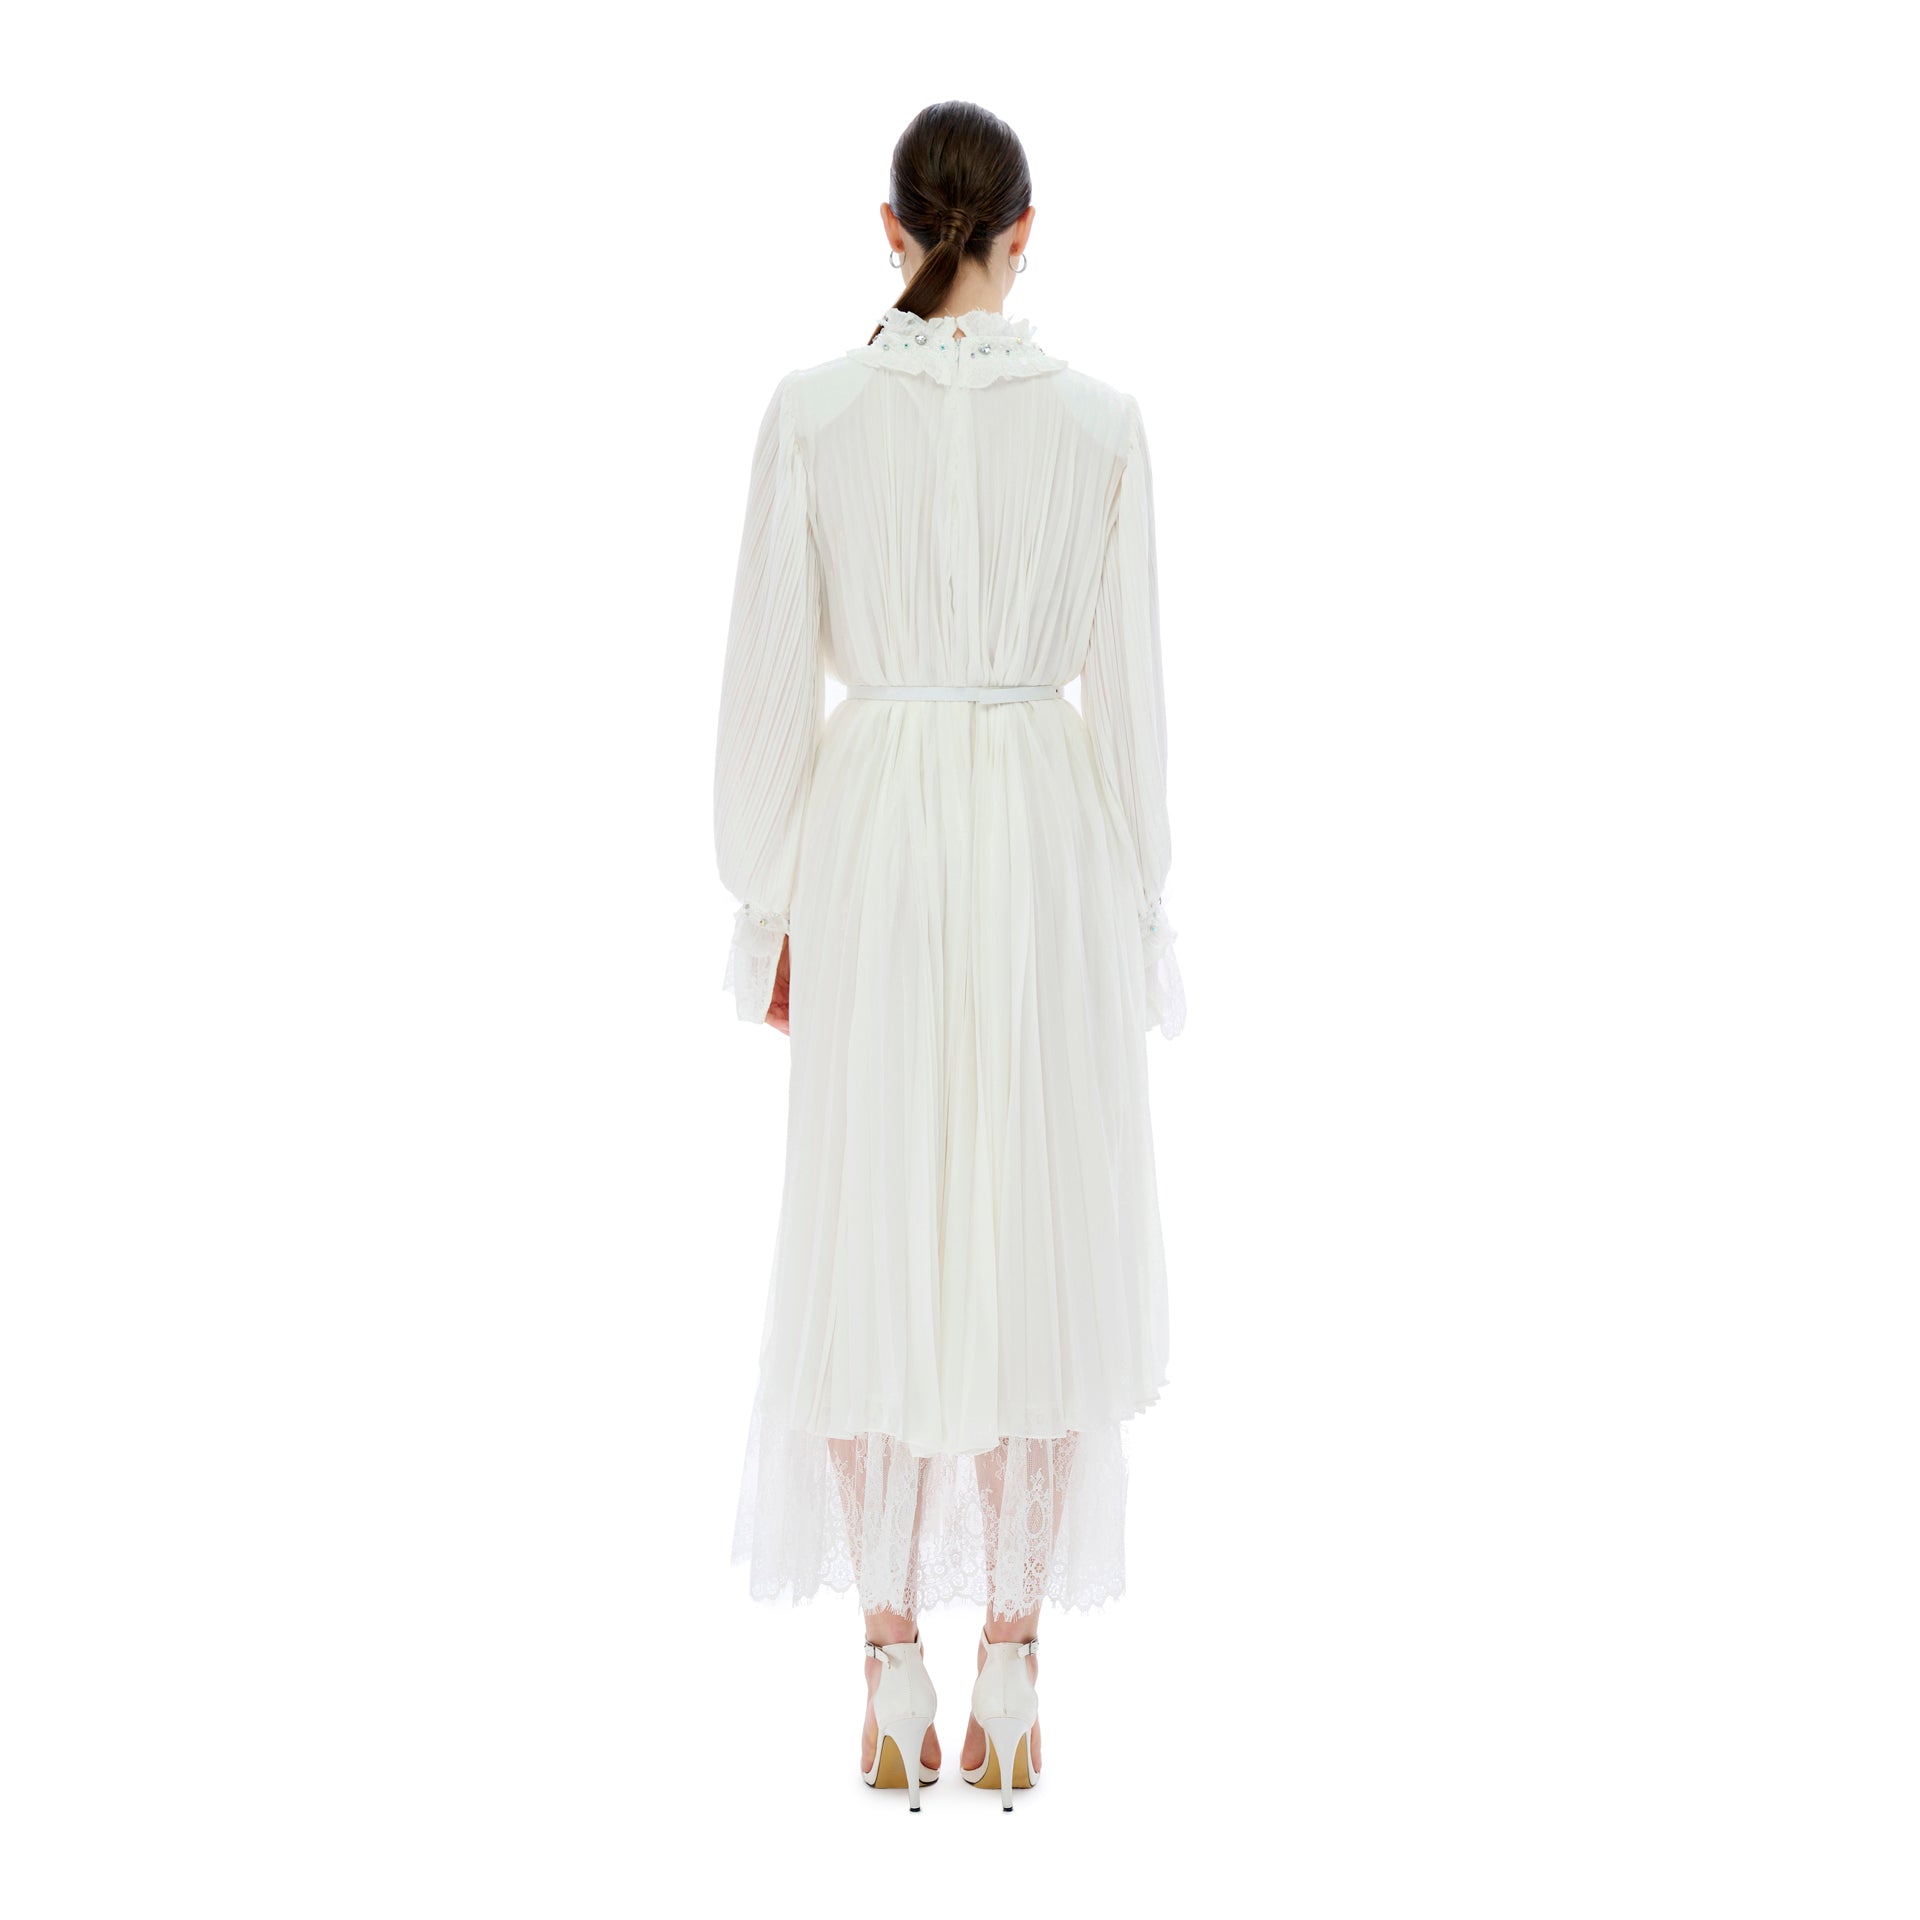 White Chiffon Pleated Dress From Miha